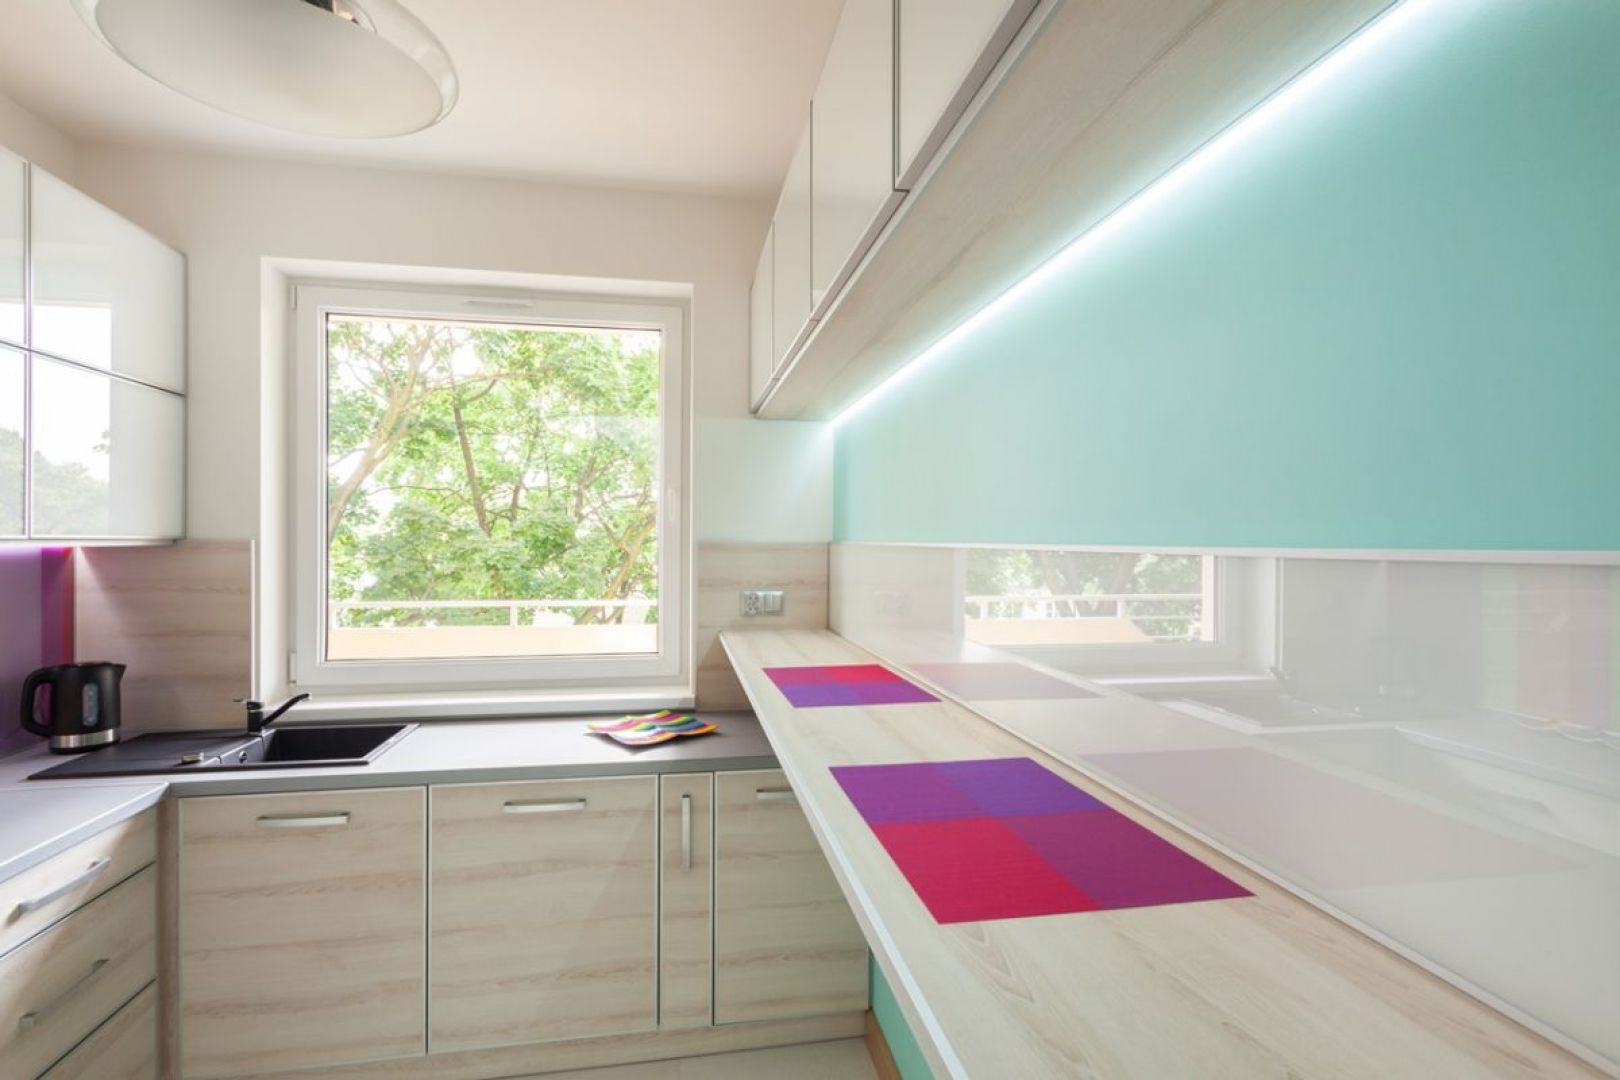 Szczególnie w małych pomieszczenia takich, jak spiżarnie czy kuchnie występują miejsca, w których przyda się dodatkowe źródło światła. Fot. GTV